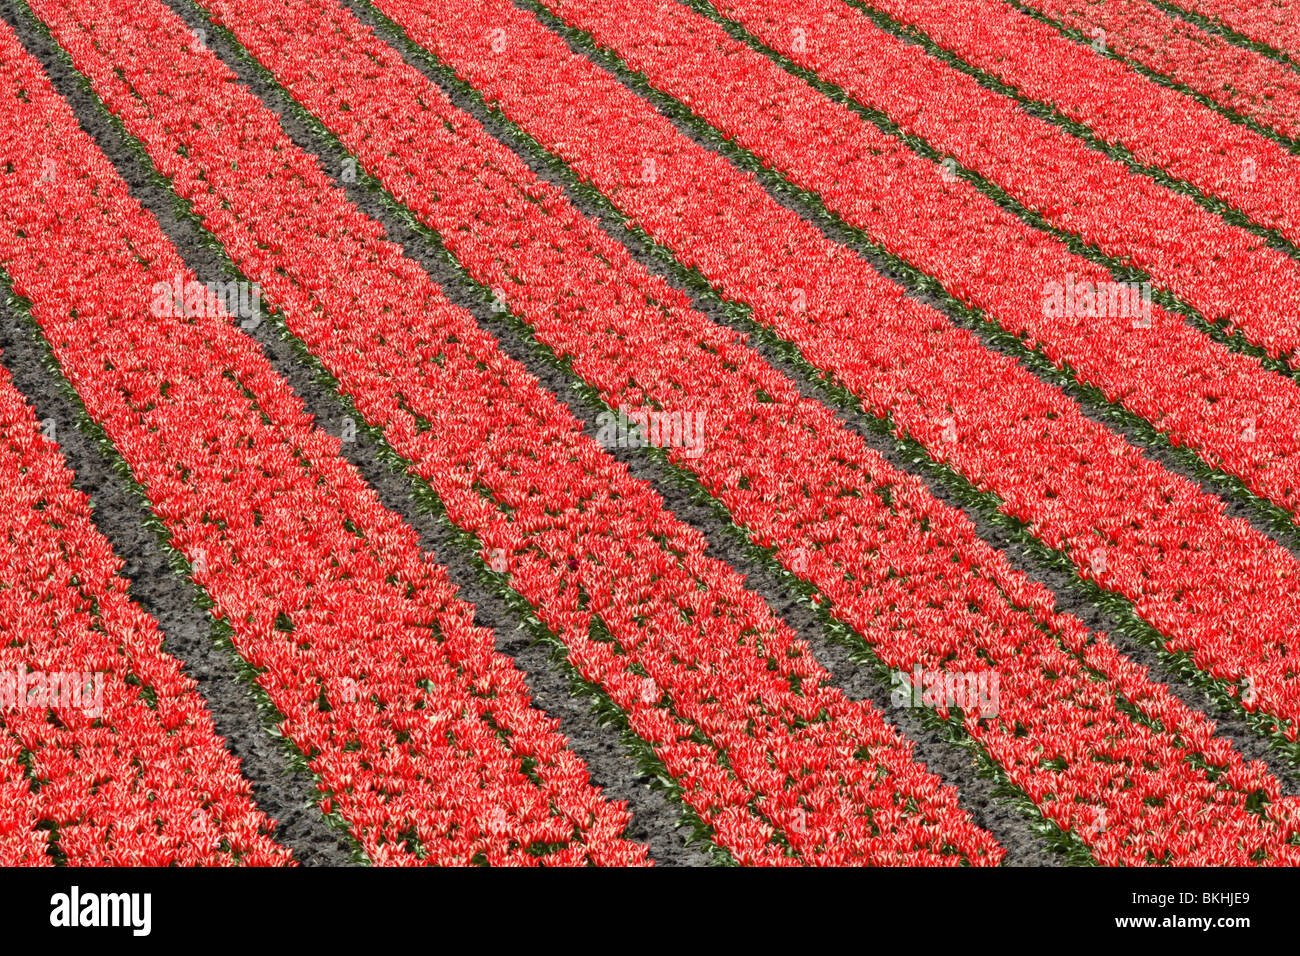 Tulpenveld; Tulip field Stock Photo